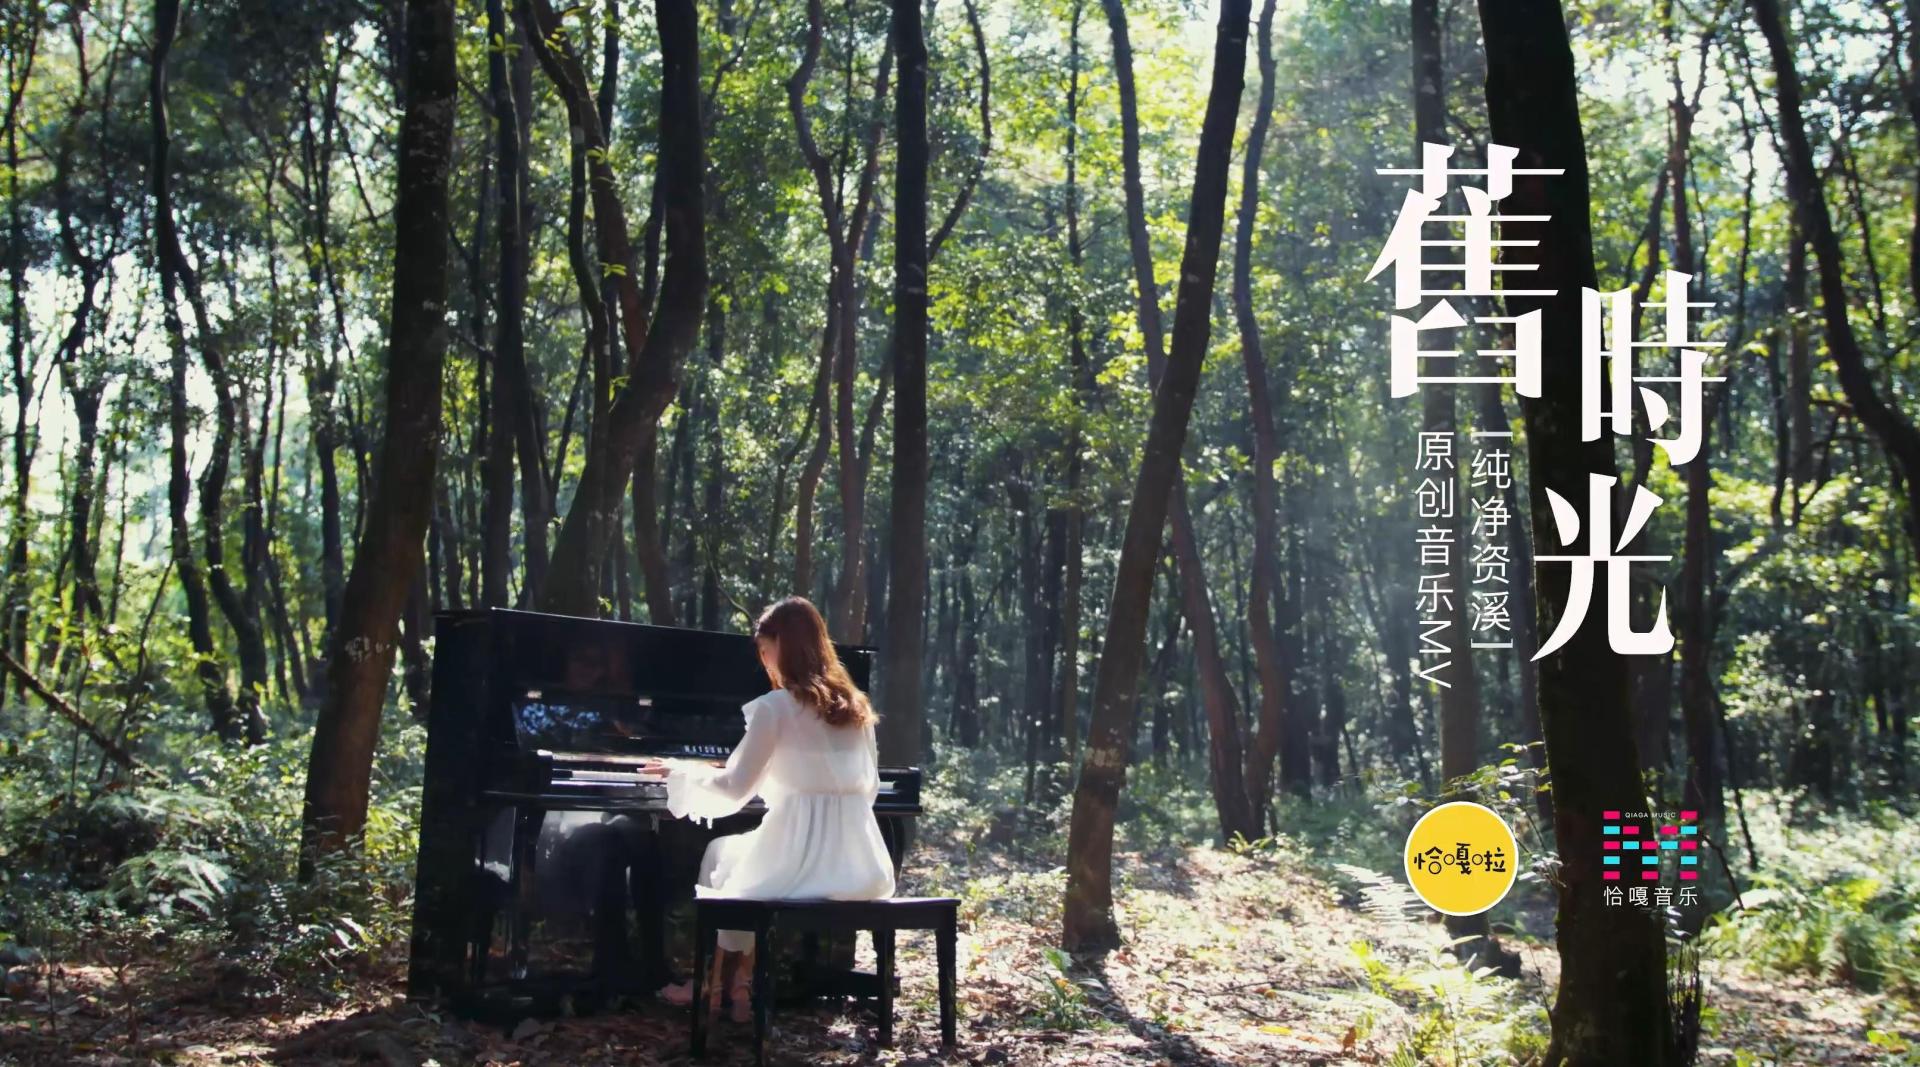 《旧时光》MV #一则则有关爱情的故事 都留在了这片森林之城